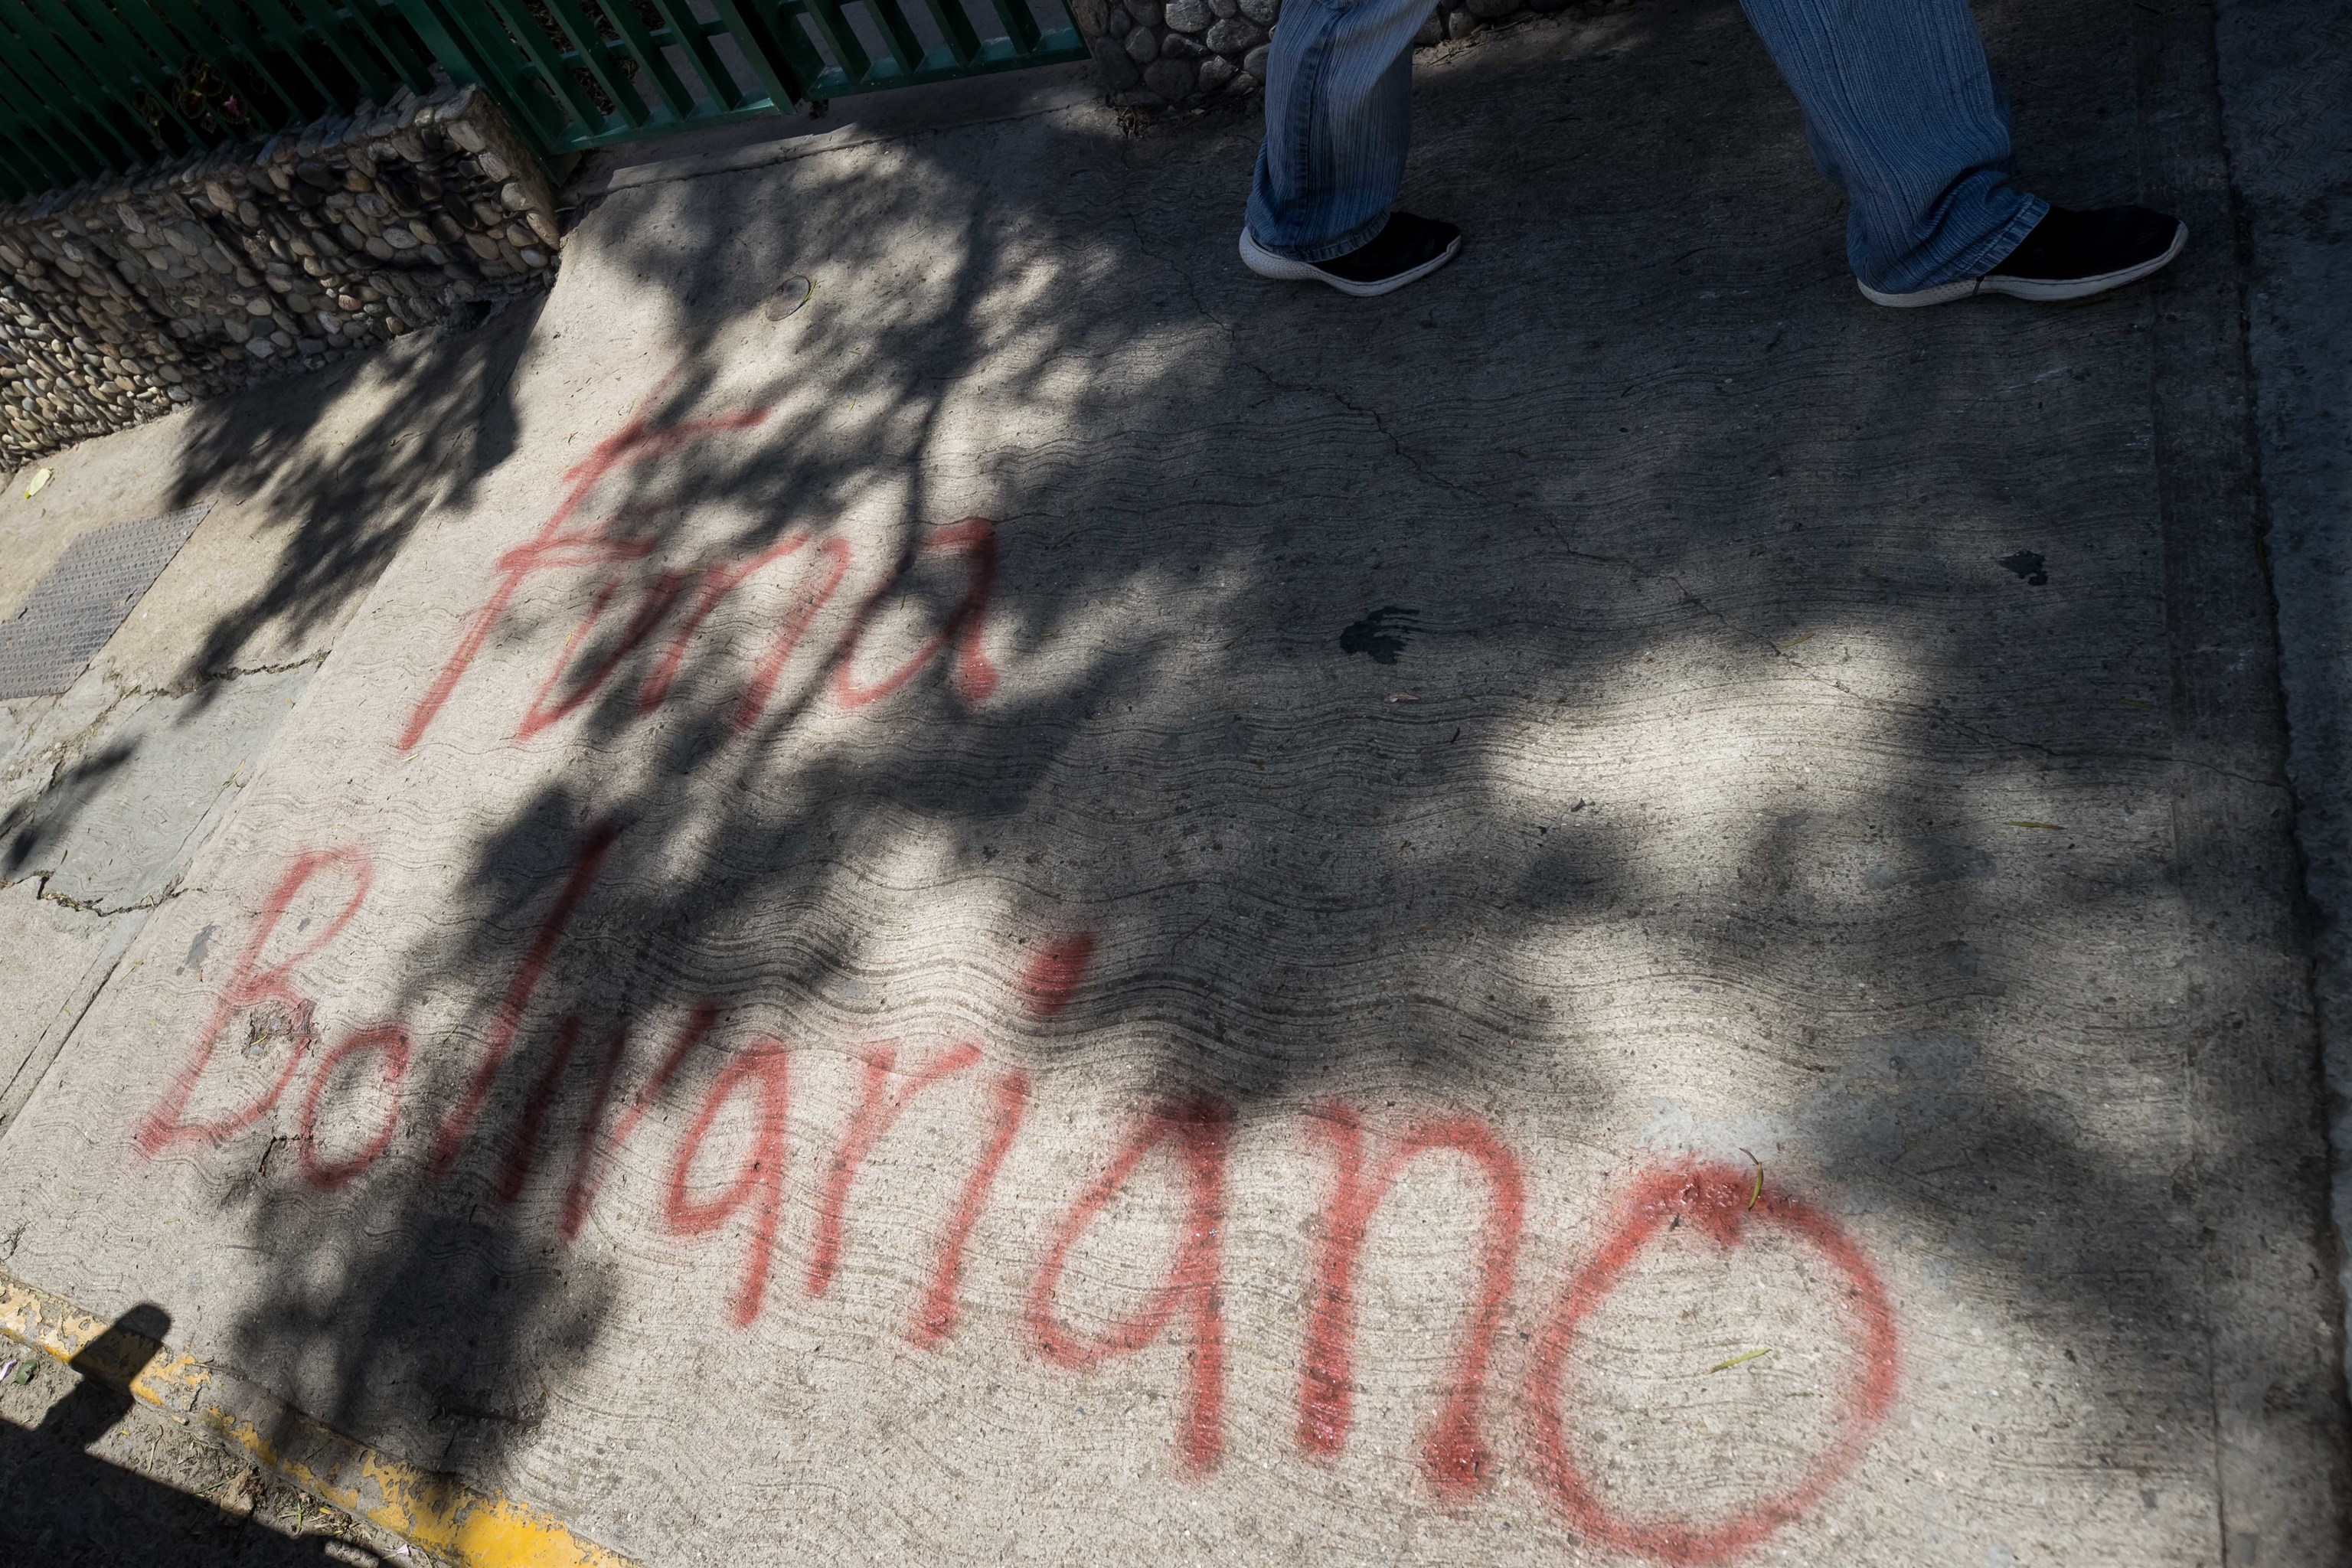 La entrada a la sede del partido "Vente Venezuela" con pintadas amenazantes de "Furia venezolana".